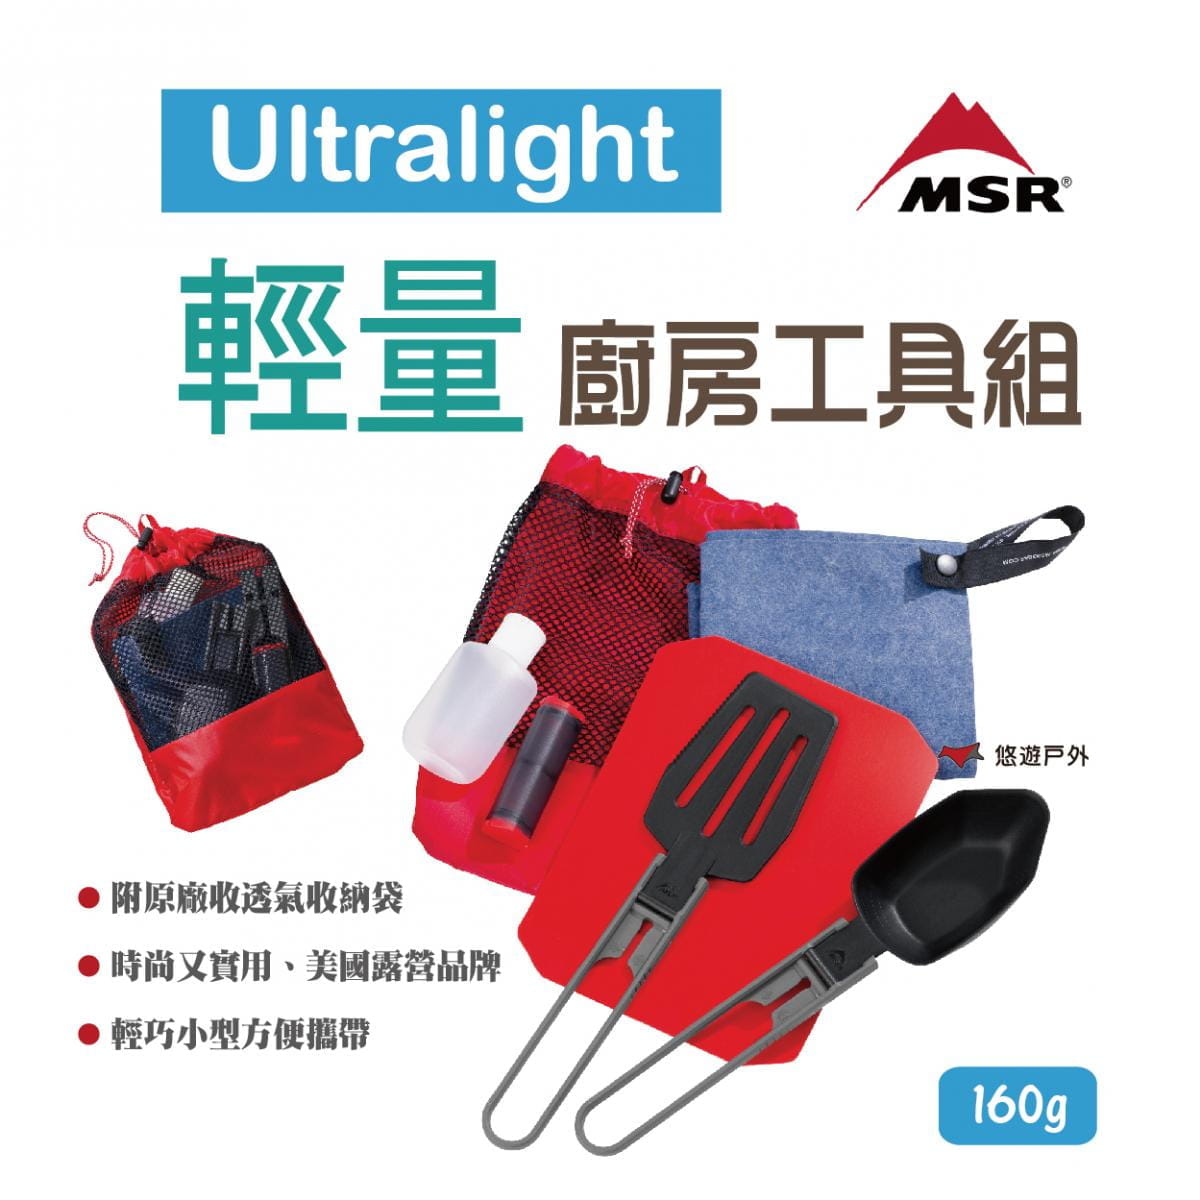 【MSR】美國 03140 Ultralight 輕量廚房工具組 悠遊戶外 1